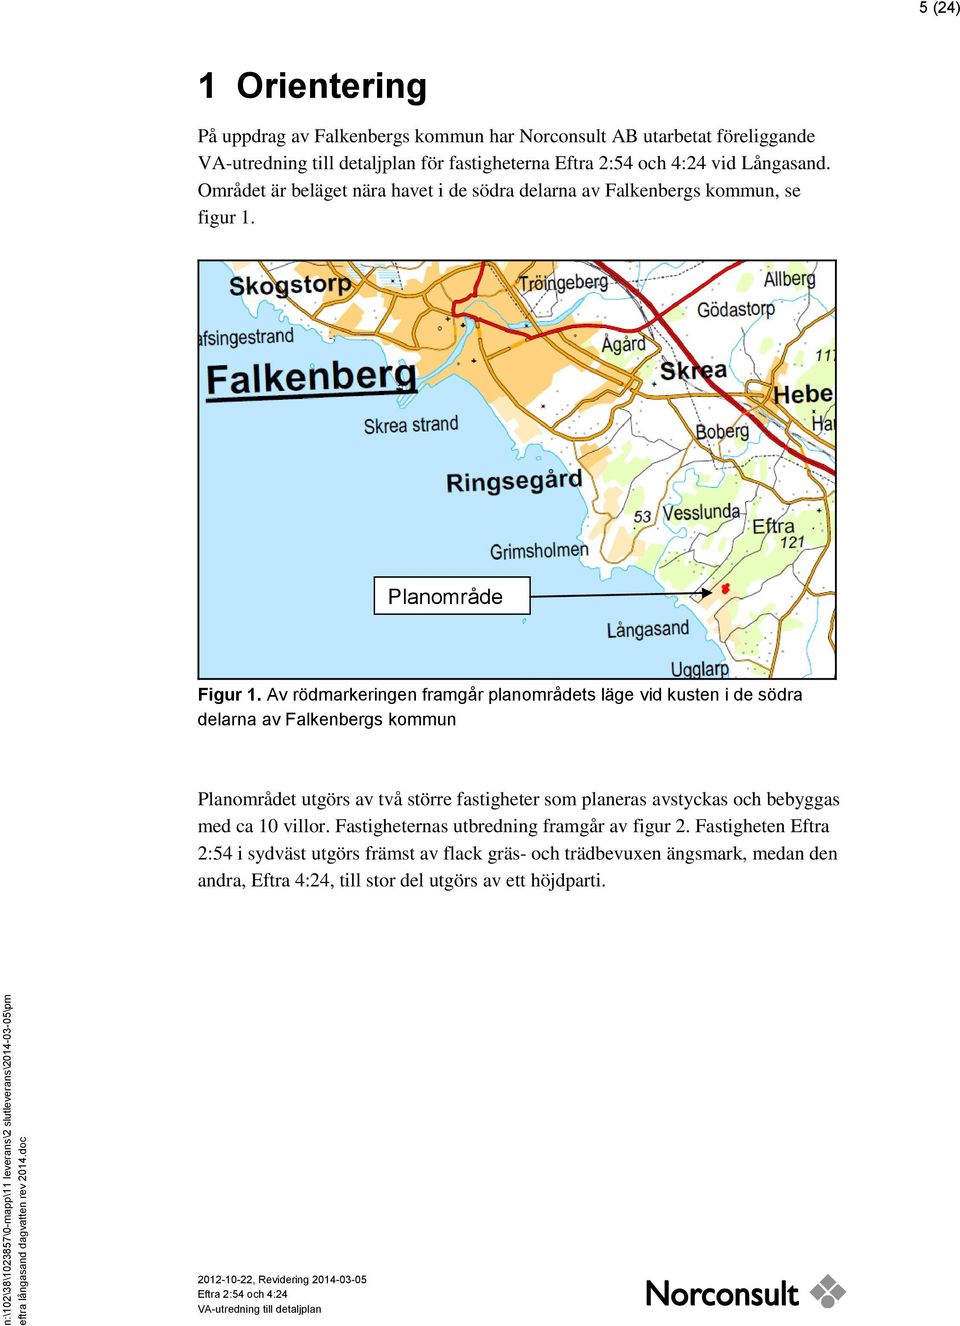 Området är beläget nära havet i de södra delarna av Falkenbergs kommun, se figur 1. Planområde Figur 1.